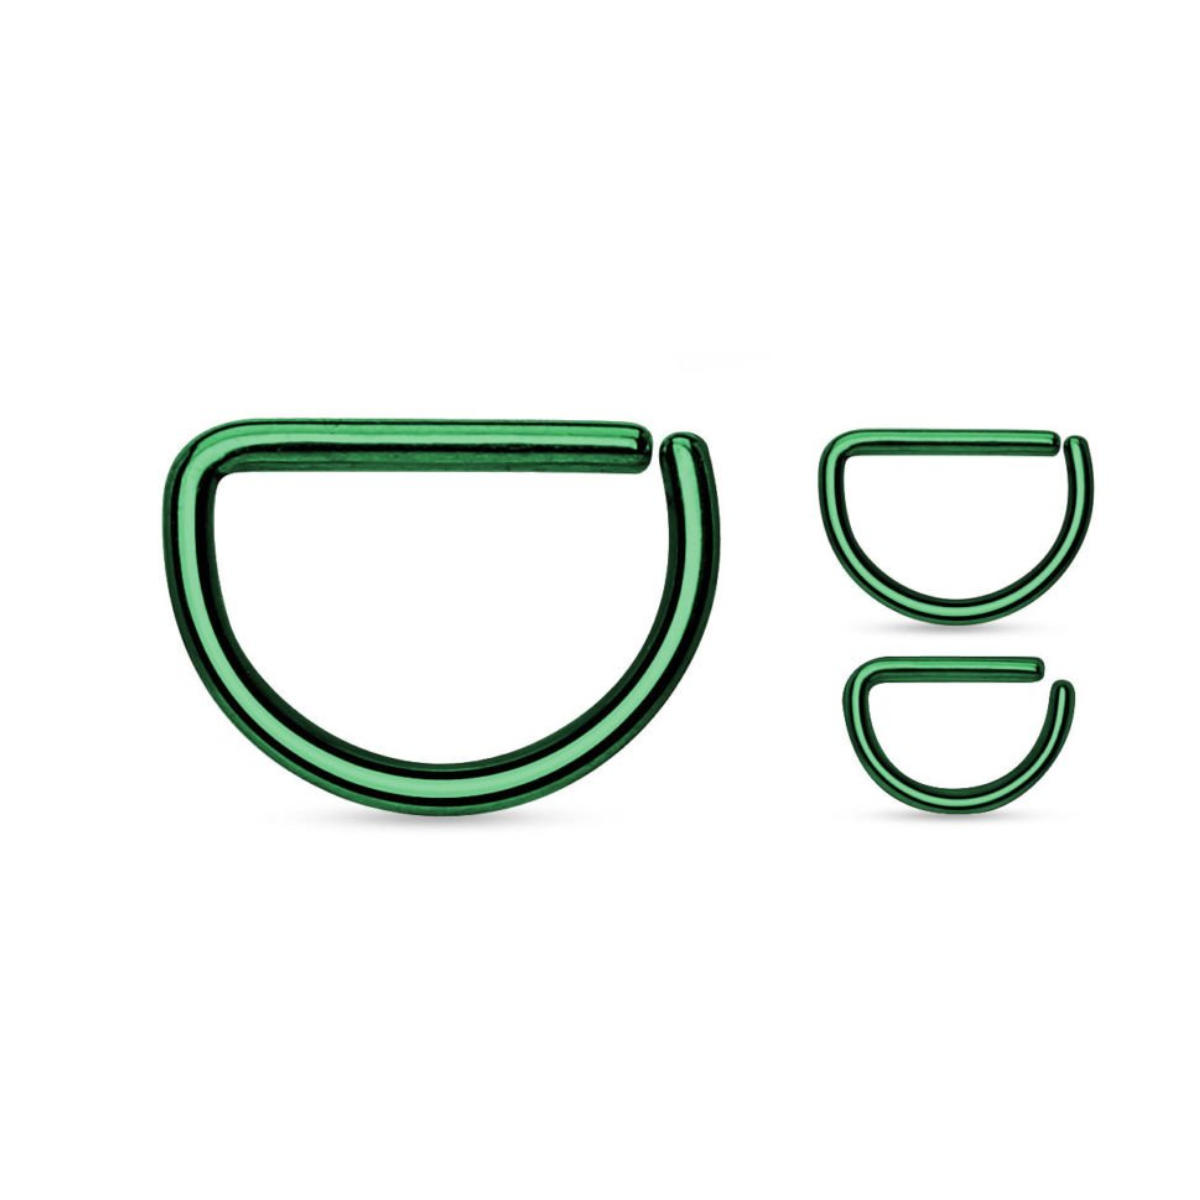 Farbený oceľový krúžok s rovnou časťou - rozbaľovací Farba: zelená, Veľkosť piercingu: 0,8 mm x 10 mm